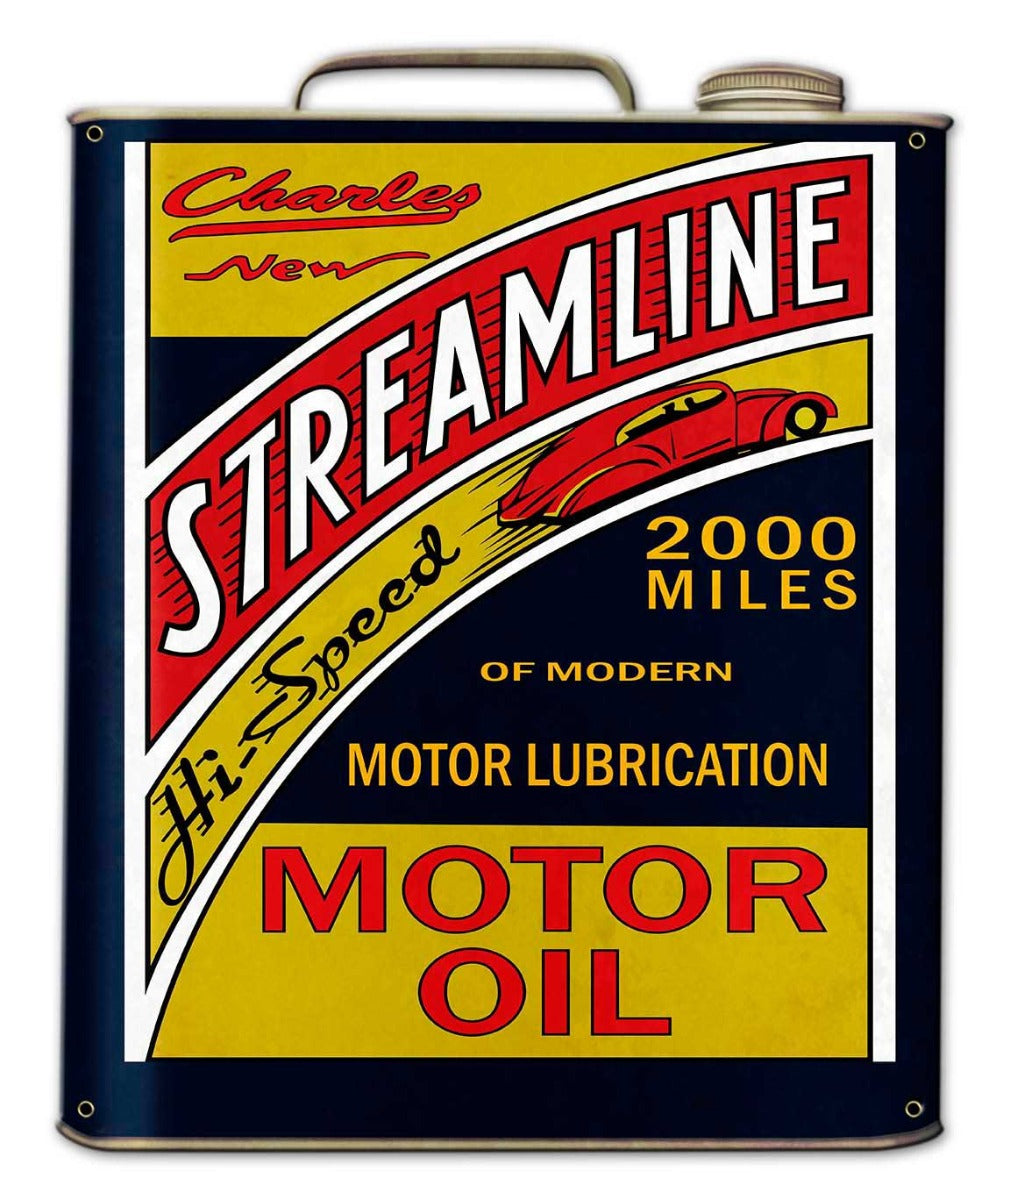 Streamline Motor Oil Can